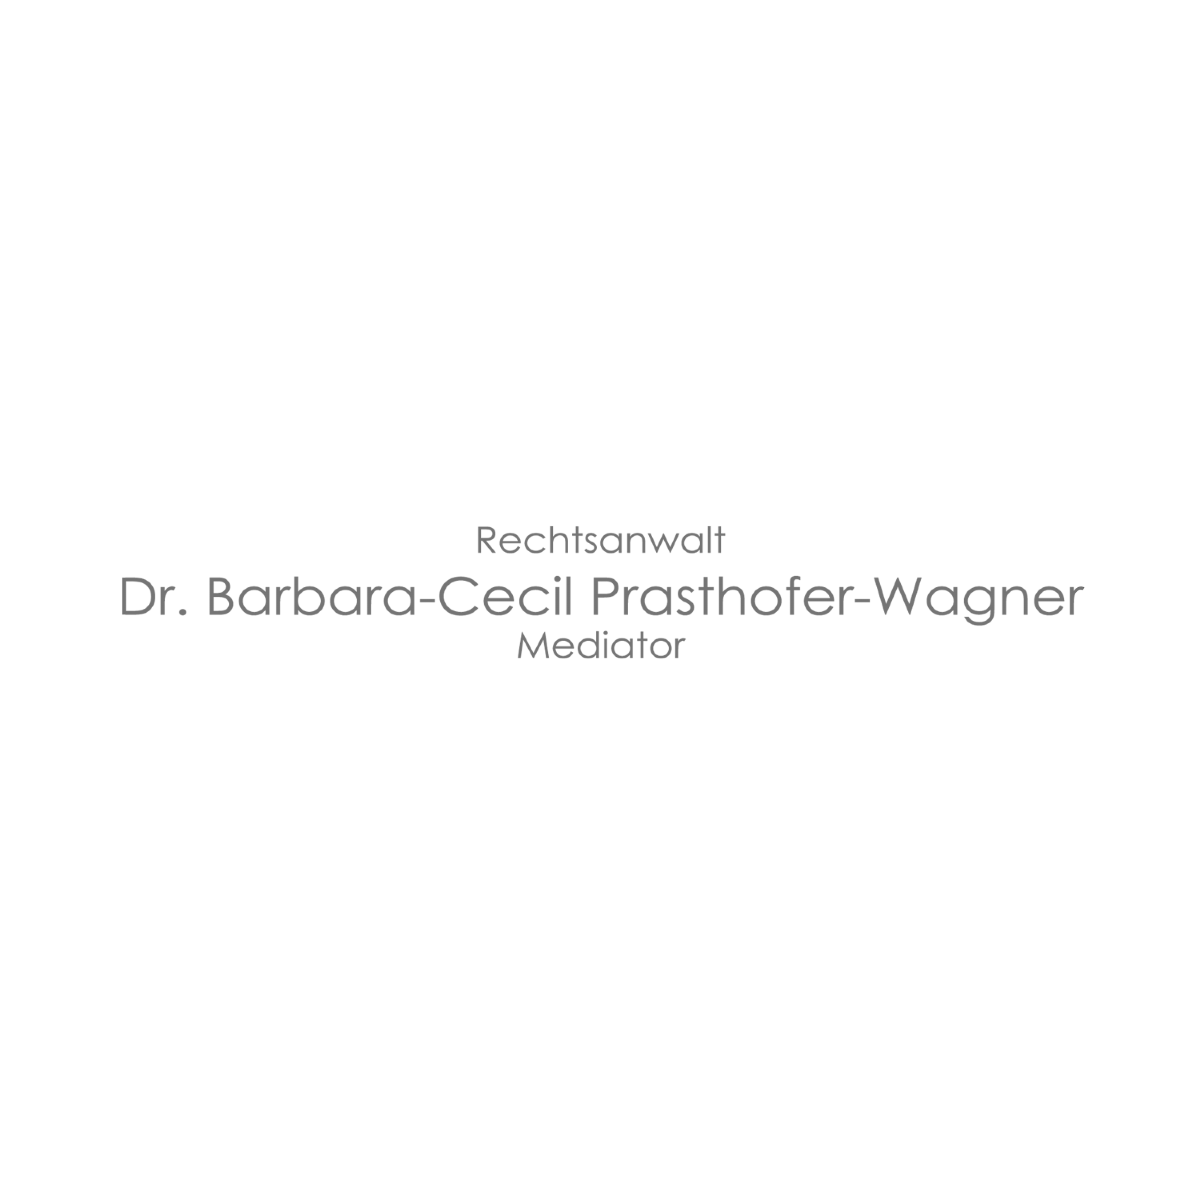 Dr. Barbara-Cecil Prasthofer-Wagner - Lawyer - Graz - 0316 8221430 Austria | ShowMeLocal.com